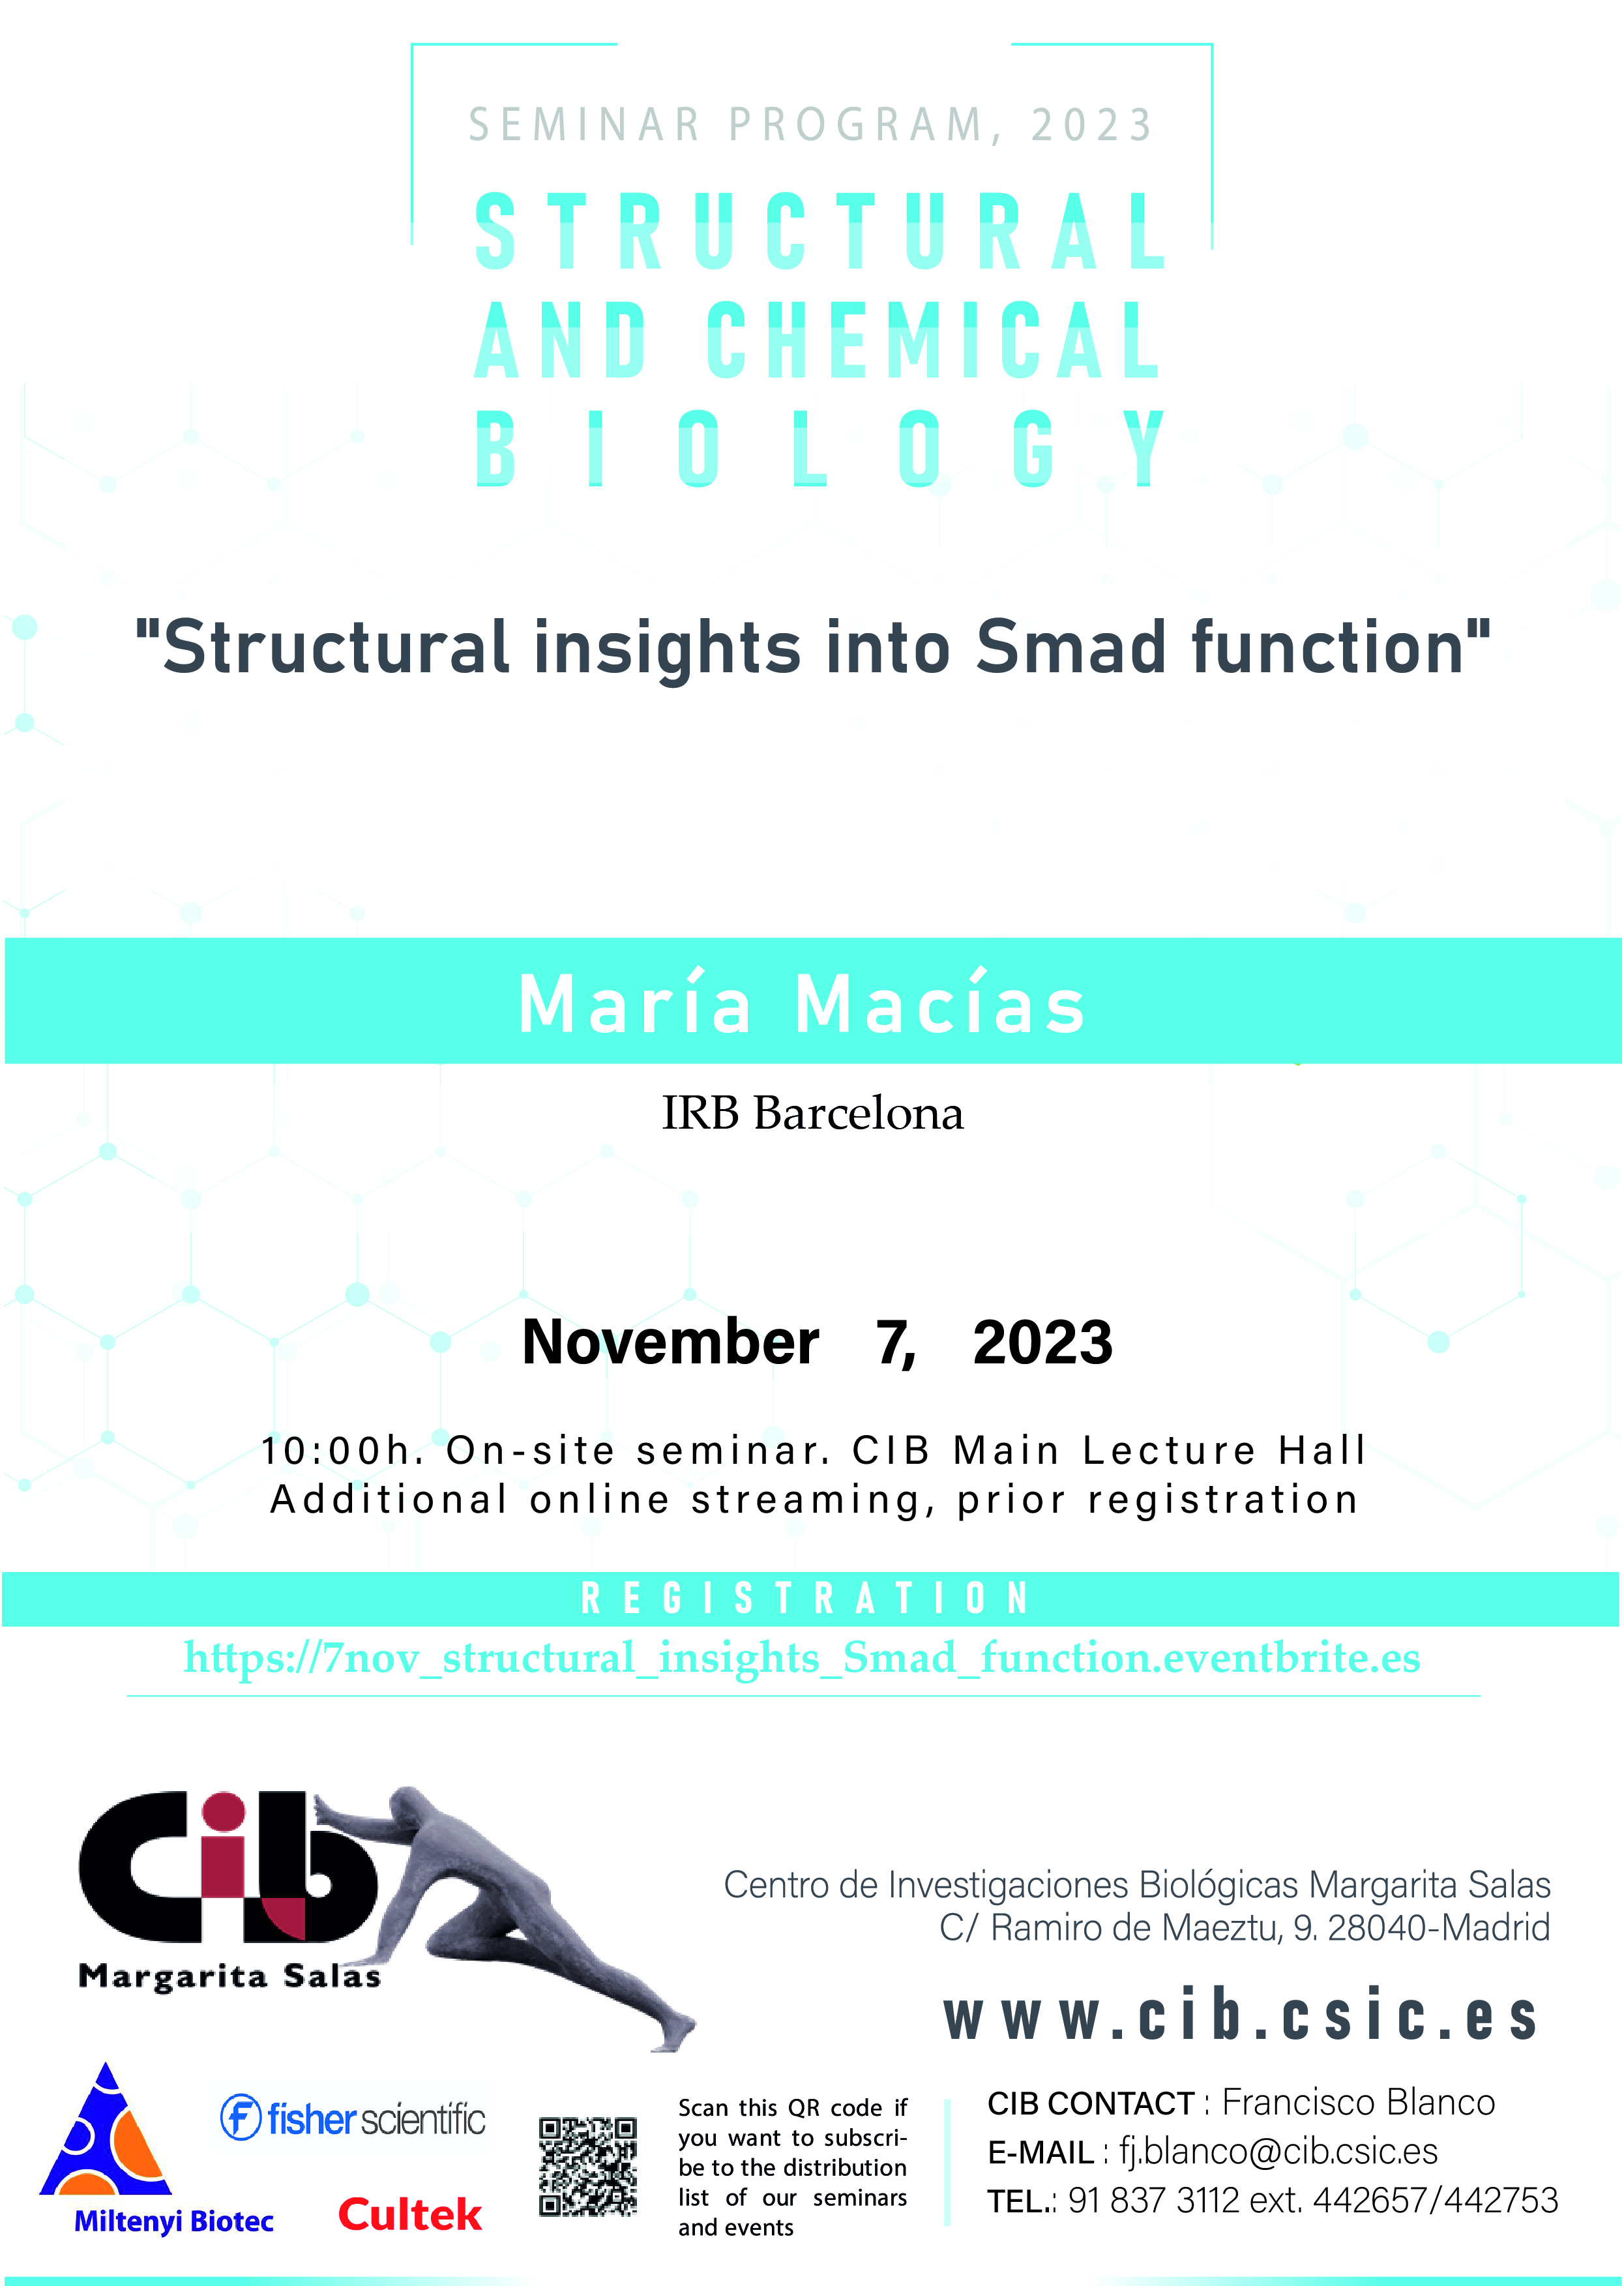 Cartel del seminario de María Macías que se celebrará el 7 de noviembre de 2023